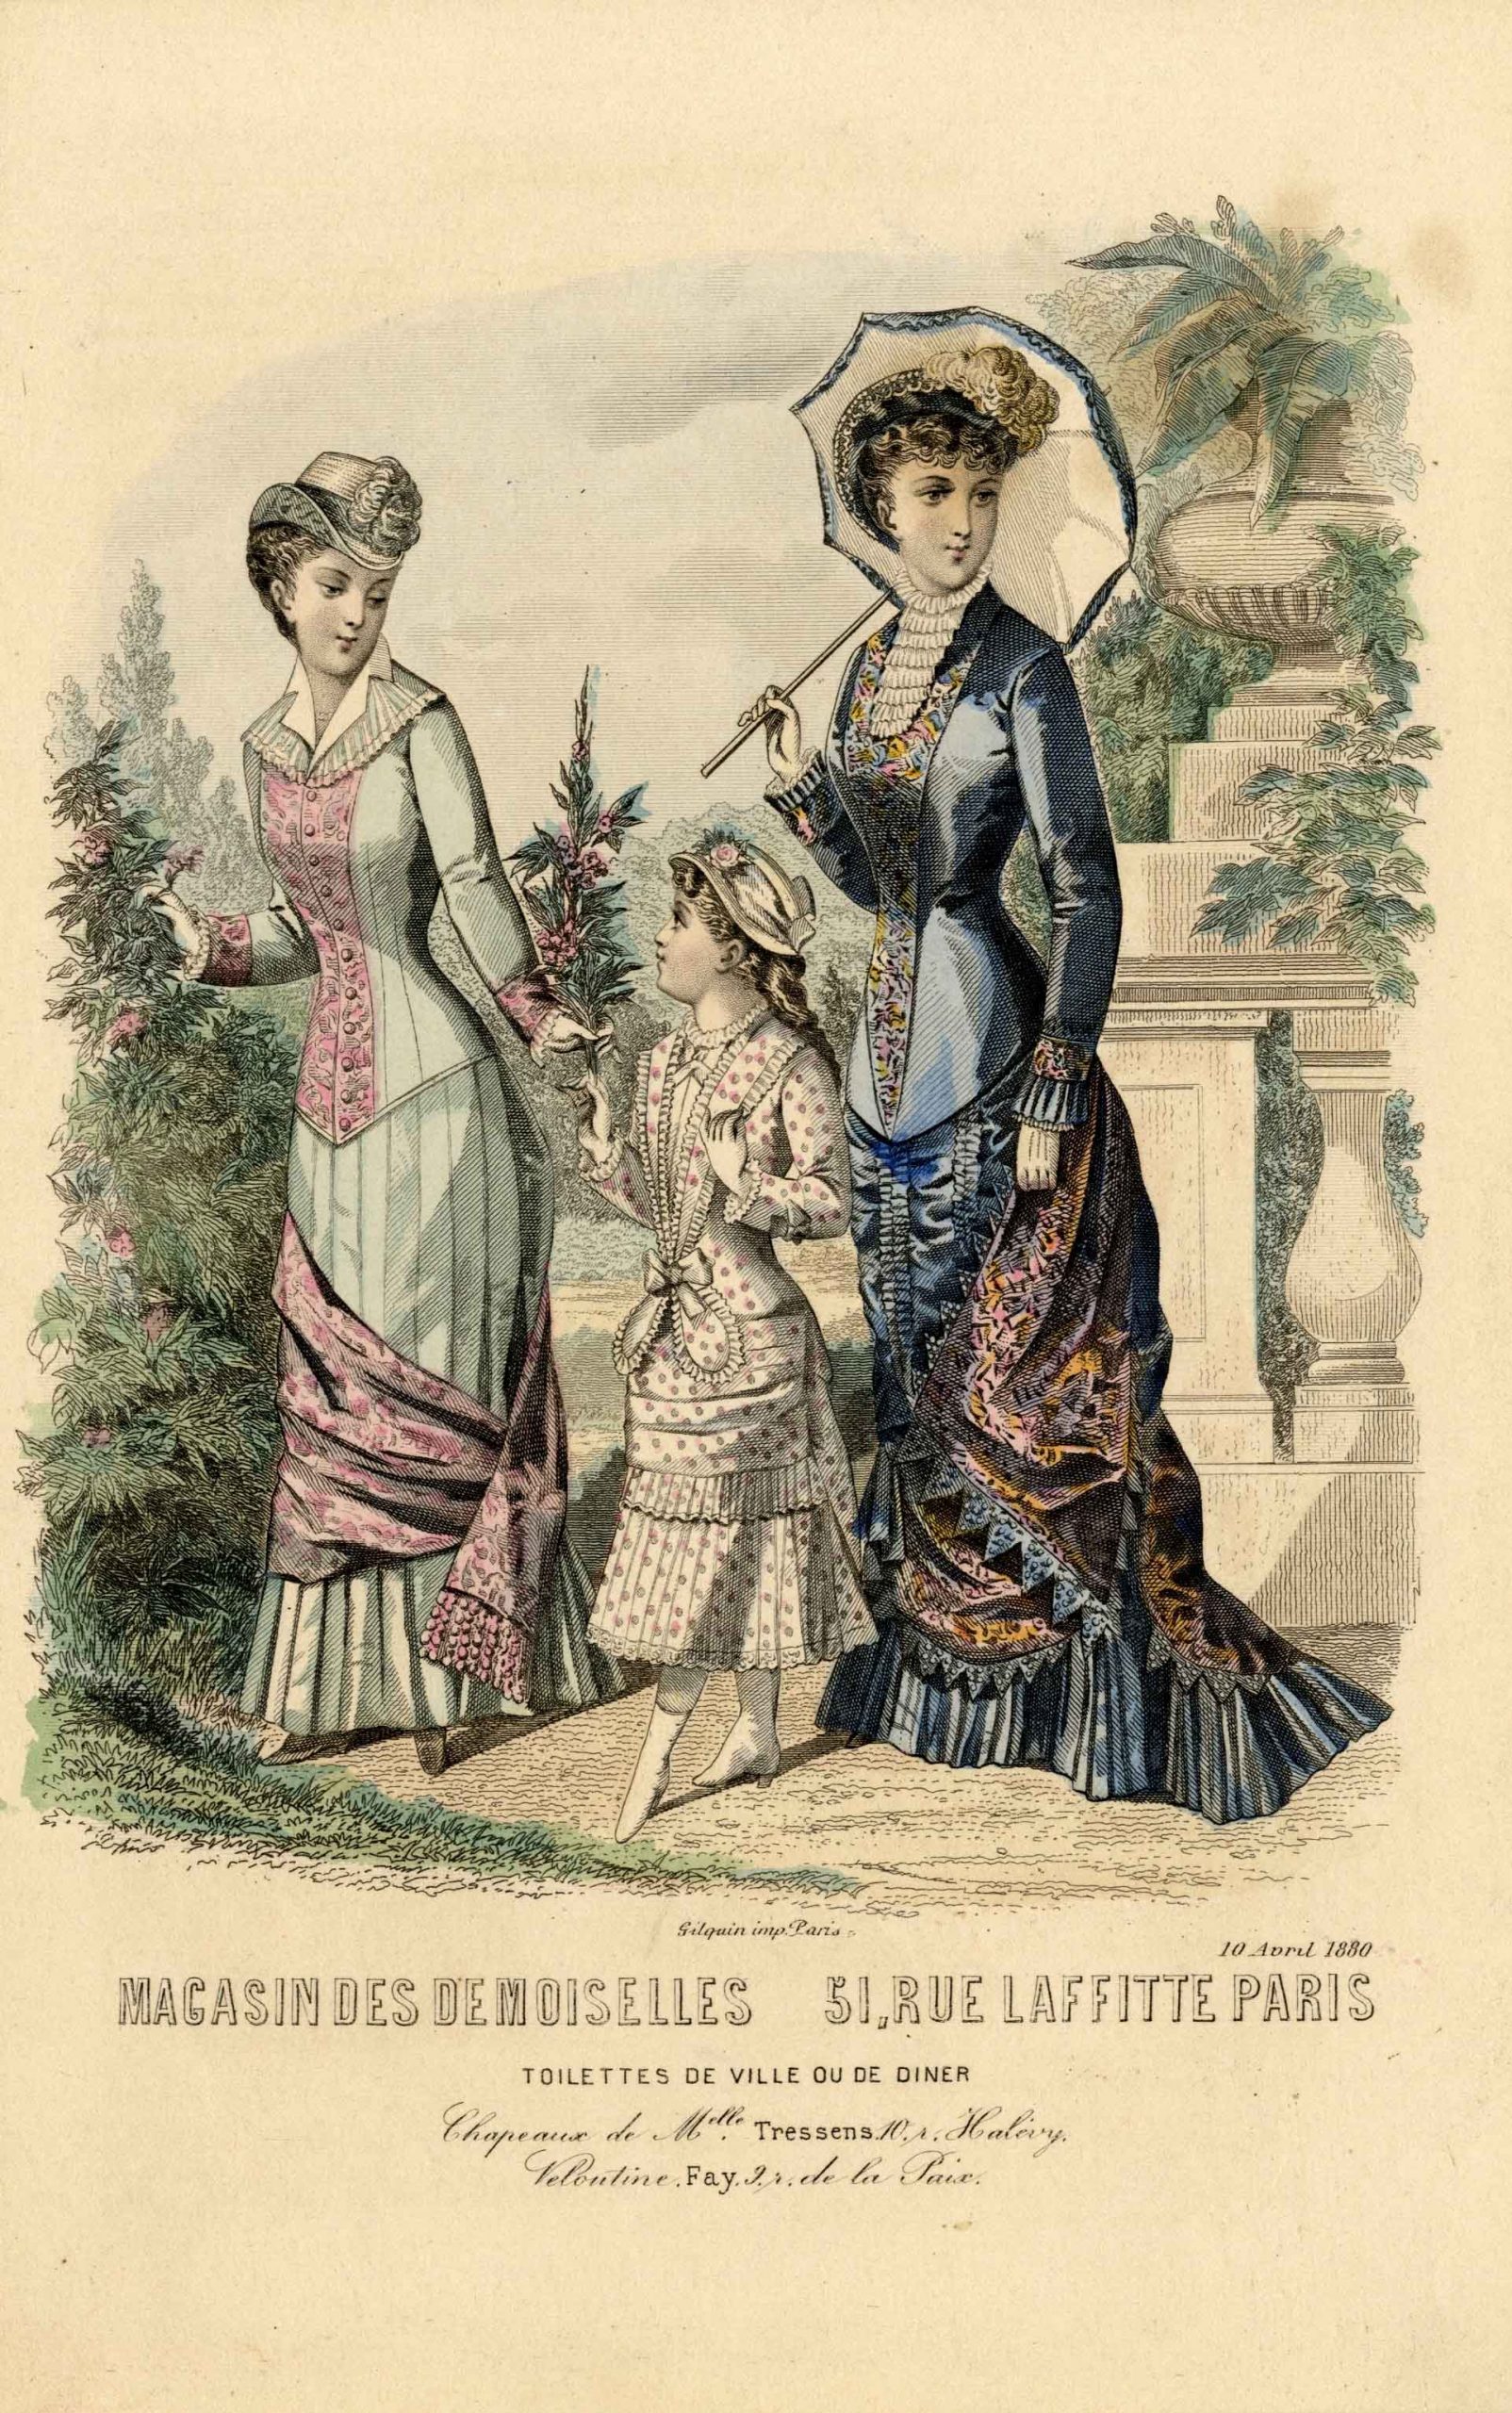 Два модных дамских костюма и костюм для девочки. Лист из журнала мод«Magasin des Demoiselles». Париж, 1880